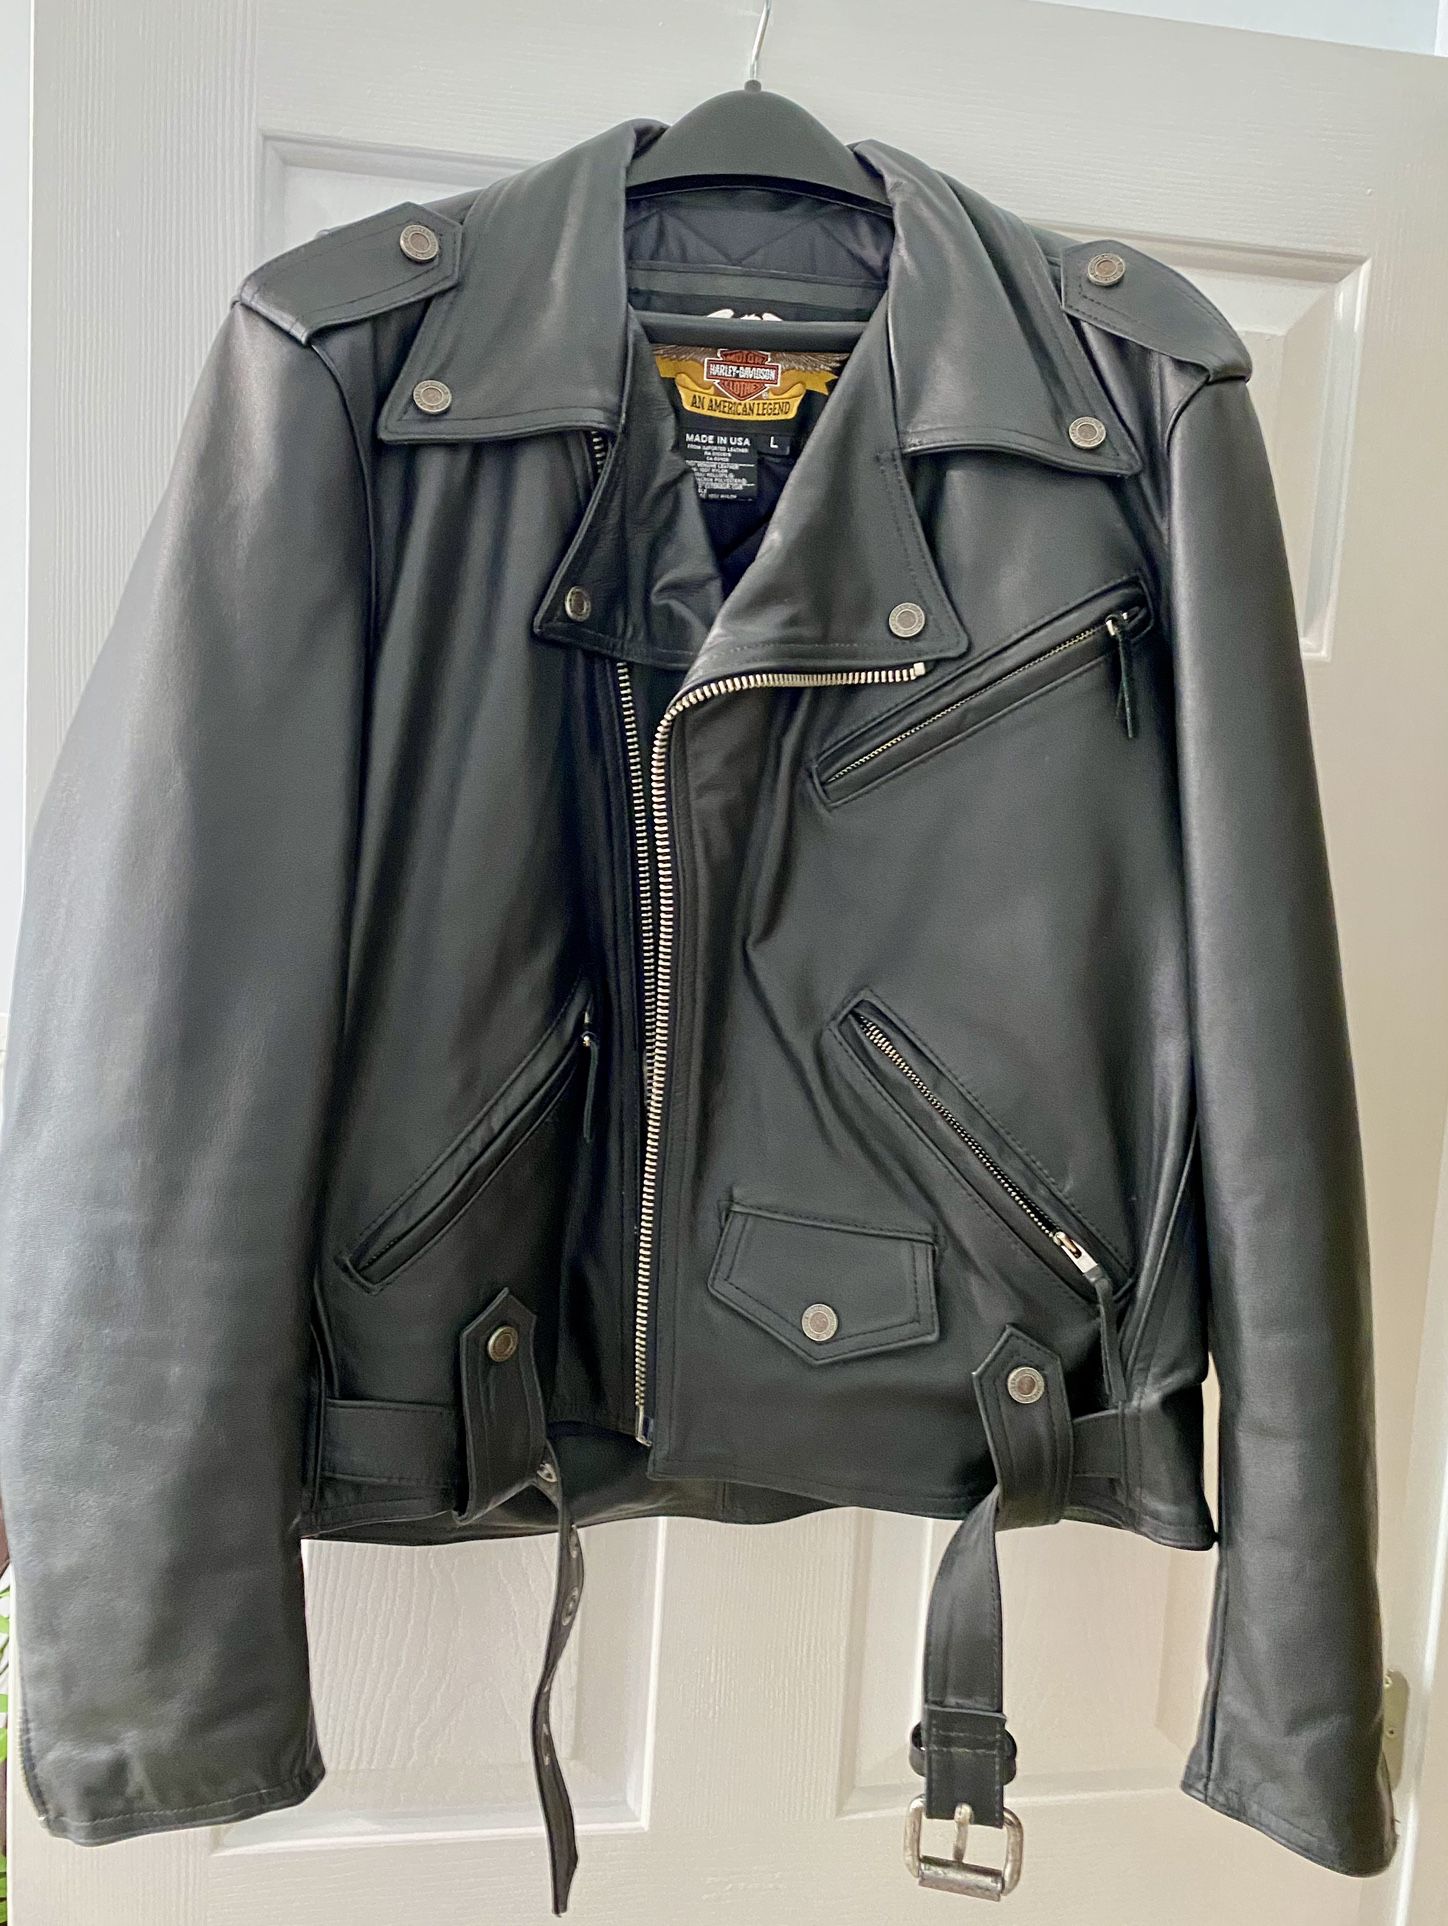 Harley-Davidson Men’s Leather Jacket Coat Vintage Retired Size L